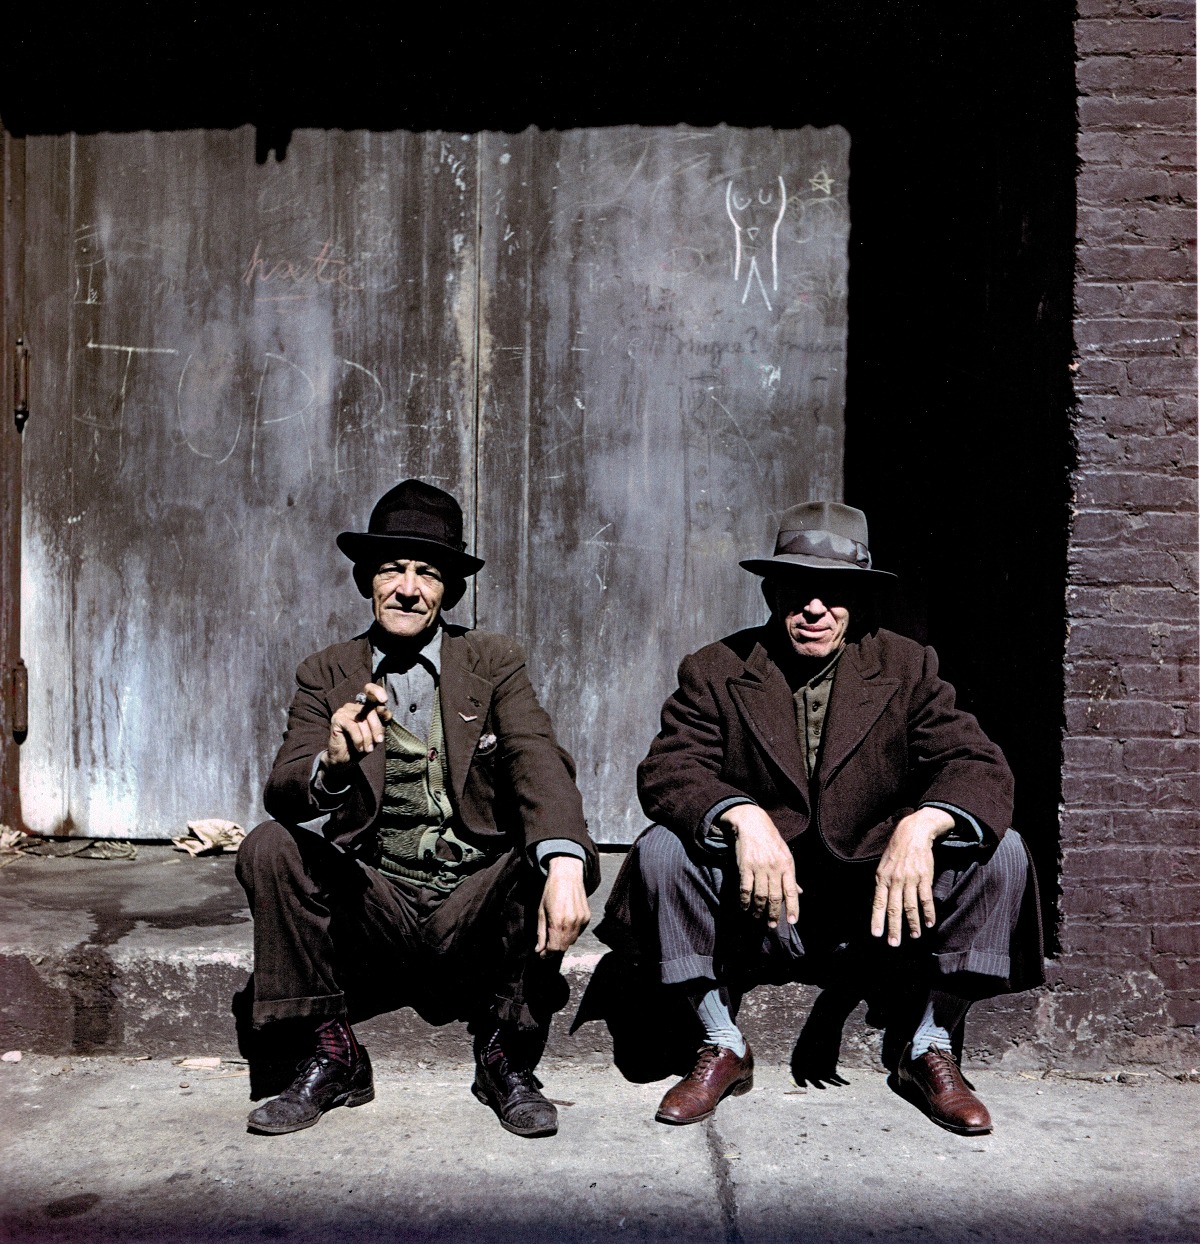 Two Men on steps, East Harlem, New York, 1947